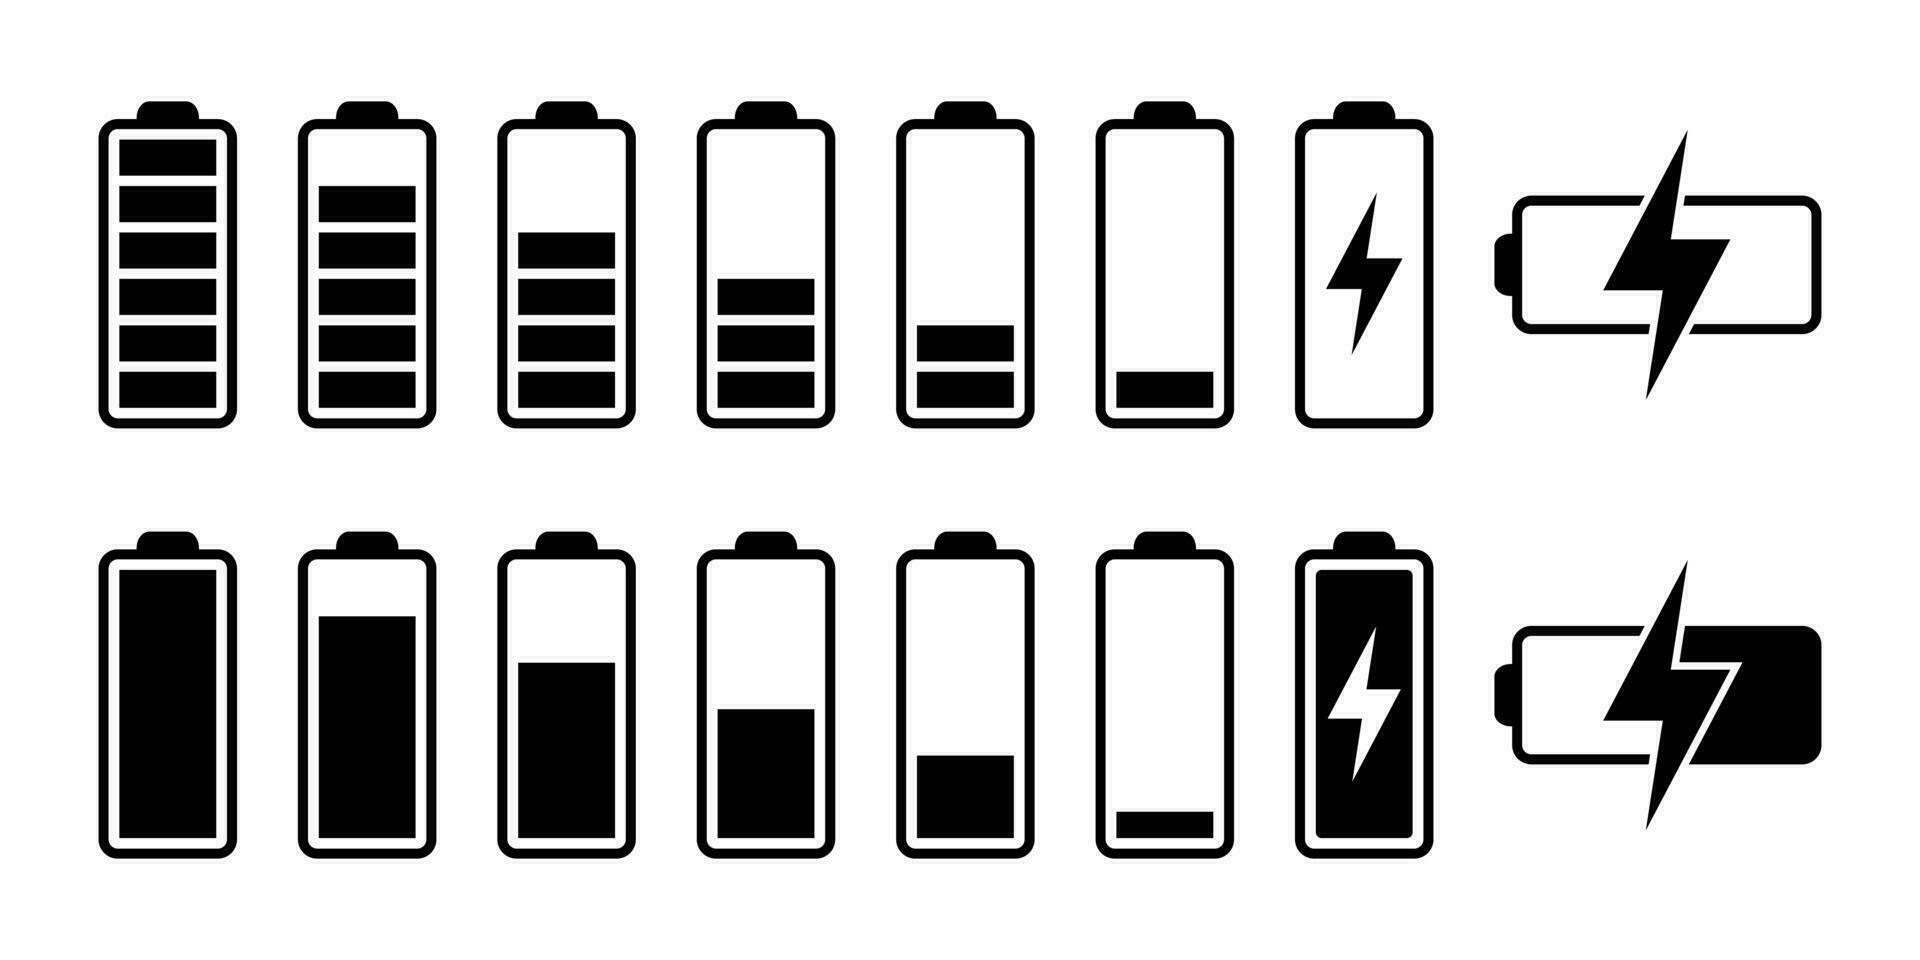 batteria ricarica icona. batteria caricare indicatore icone, vettore grafica.